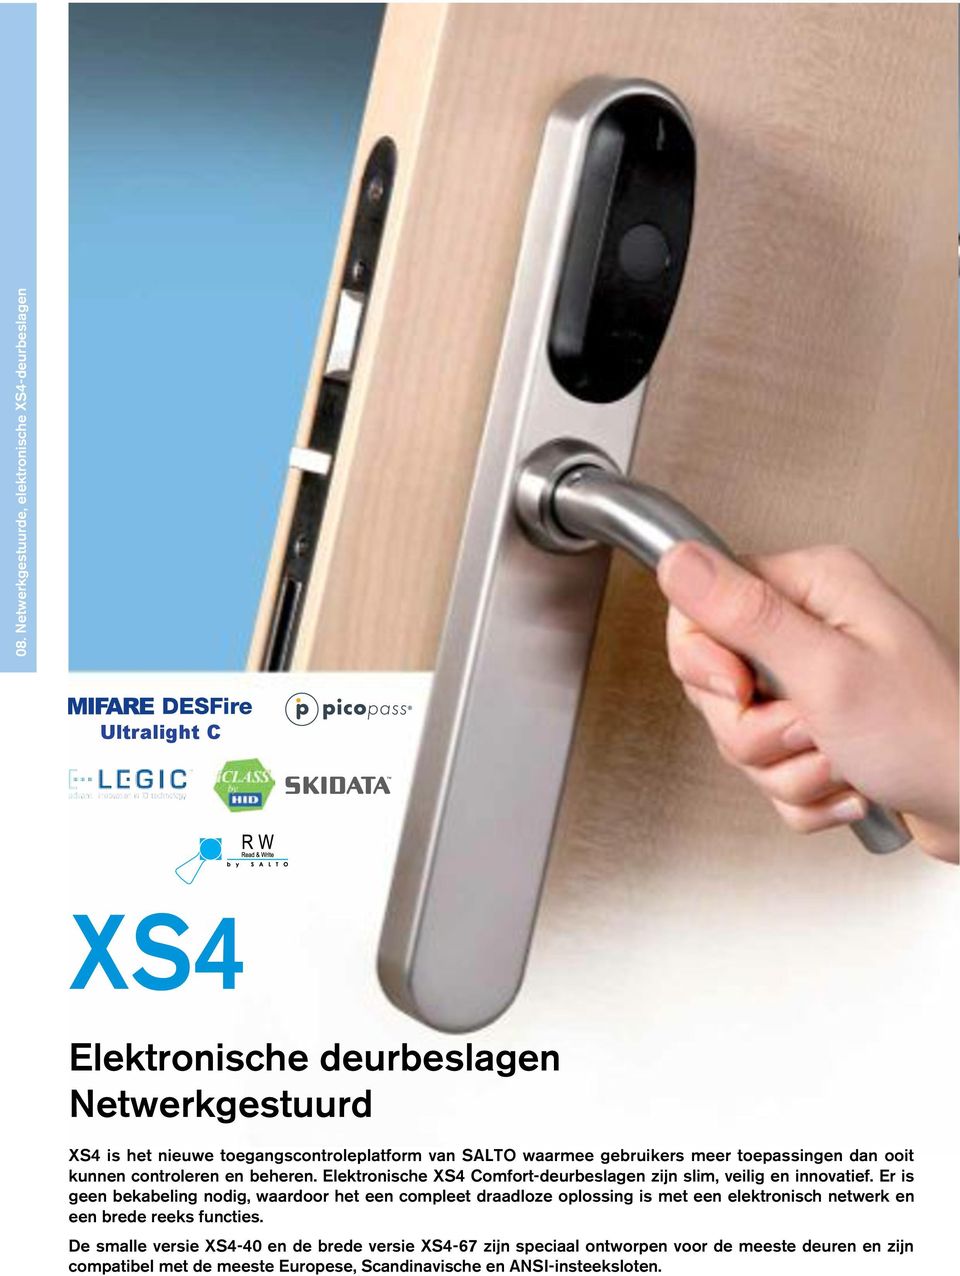 waarmee gebruikers meer toepassingen dan ooit kunnen controleren en beheren. Elektronische XS4 Comfort-deurbeslagen zijn slim, veilig en innovatief.